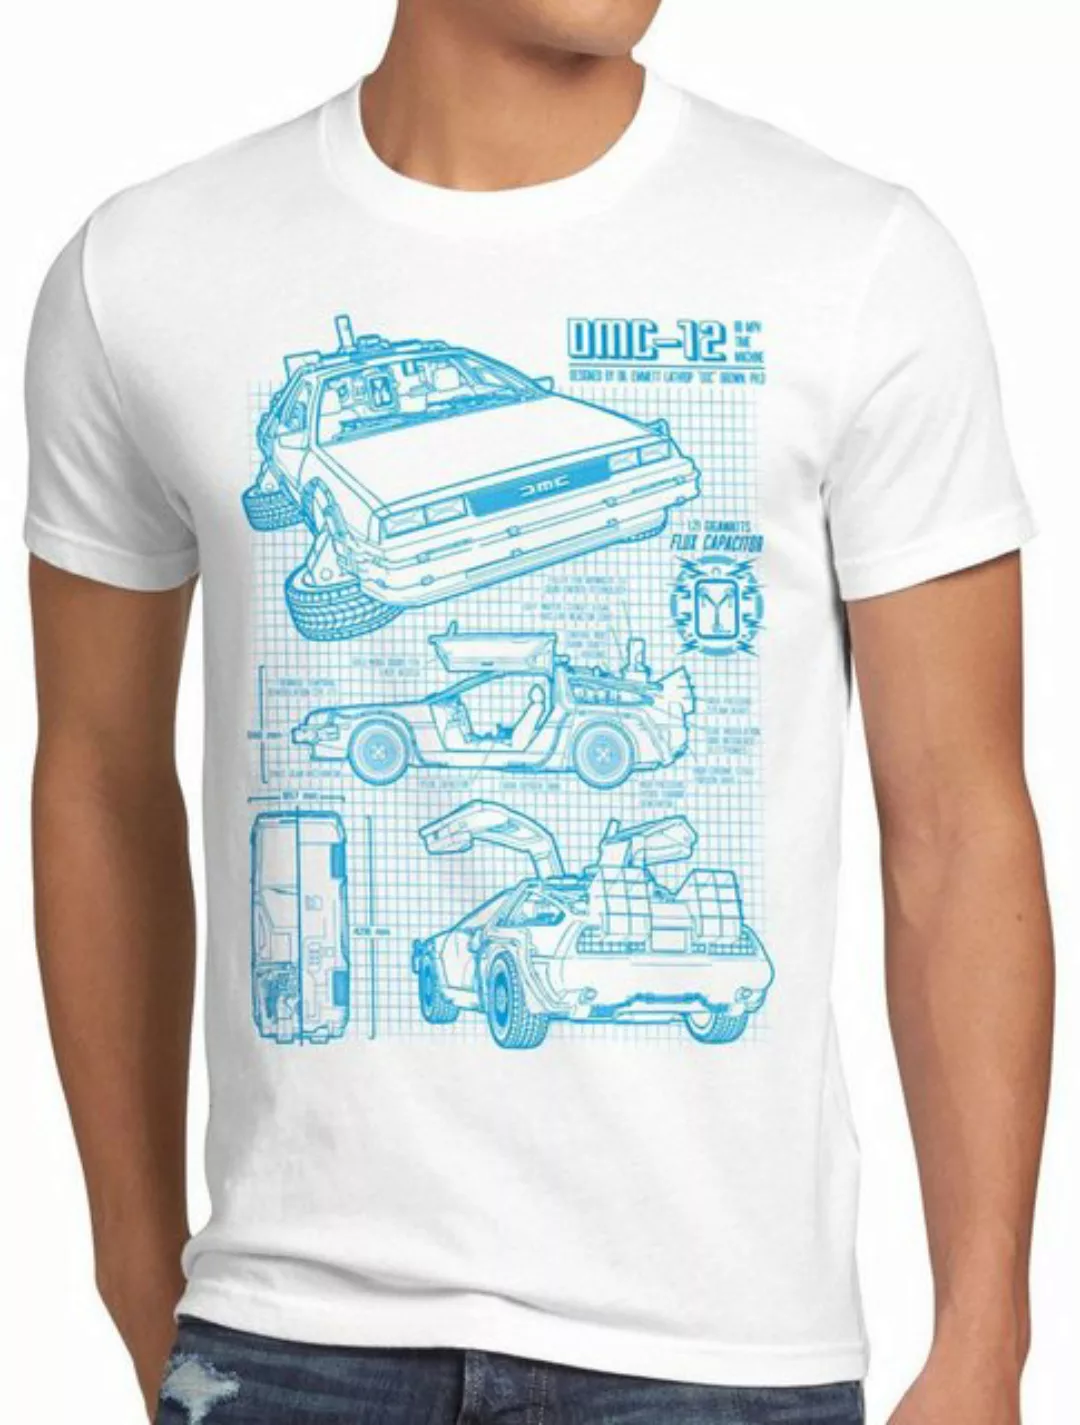 style3 Print-Shirt Herren T-Shirt Delorean DMC-12 zurück zukunft in die to günstig online kaufen